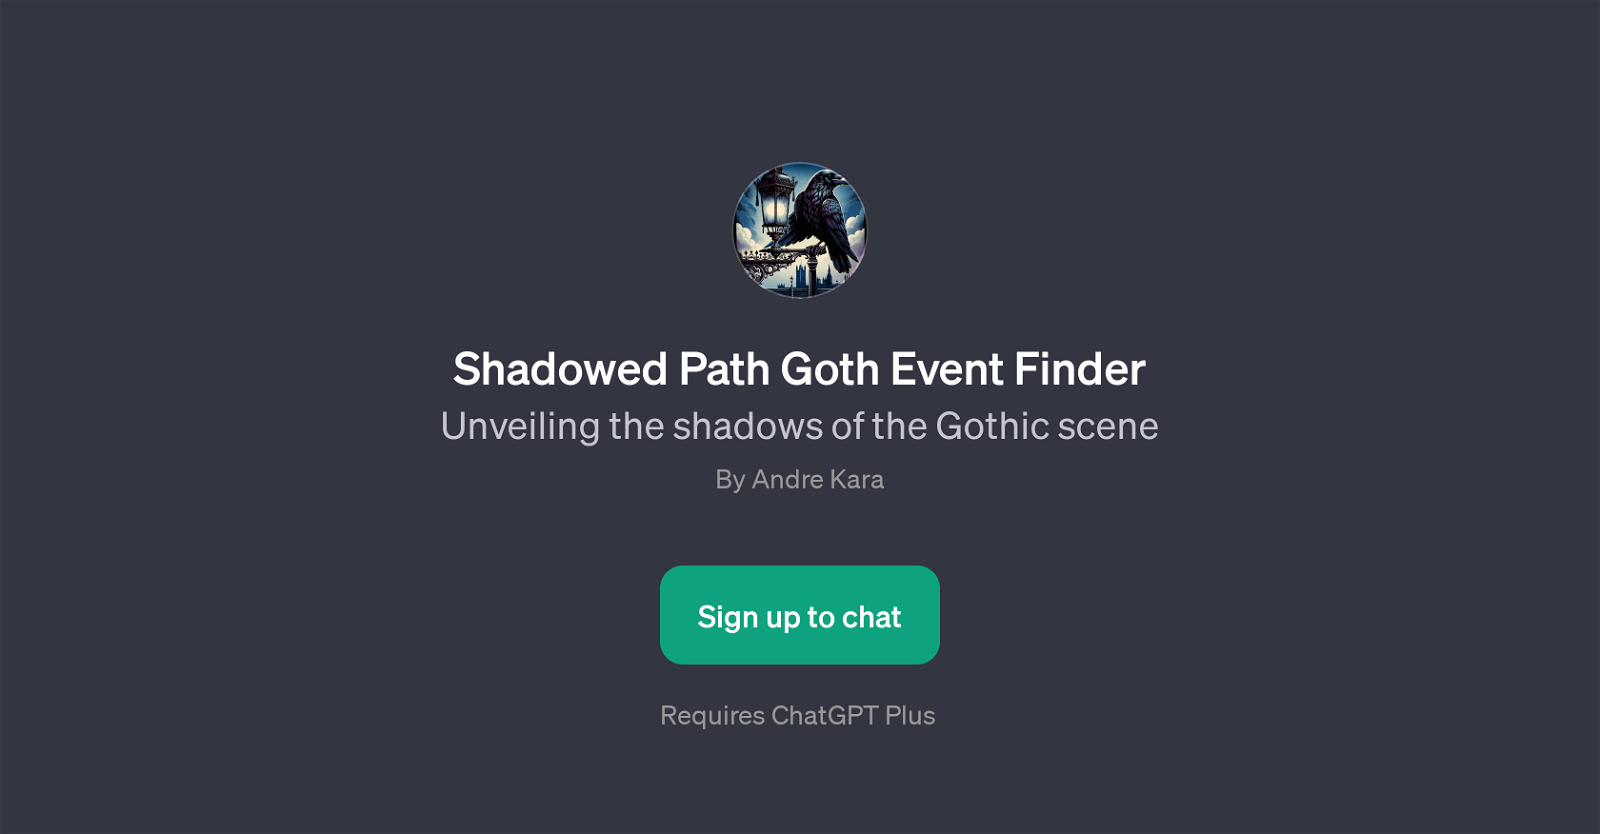 Shadowed Path Goth Event Finder website